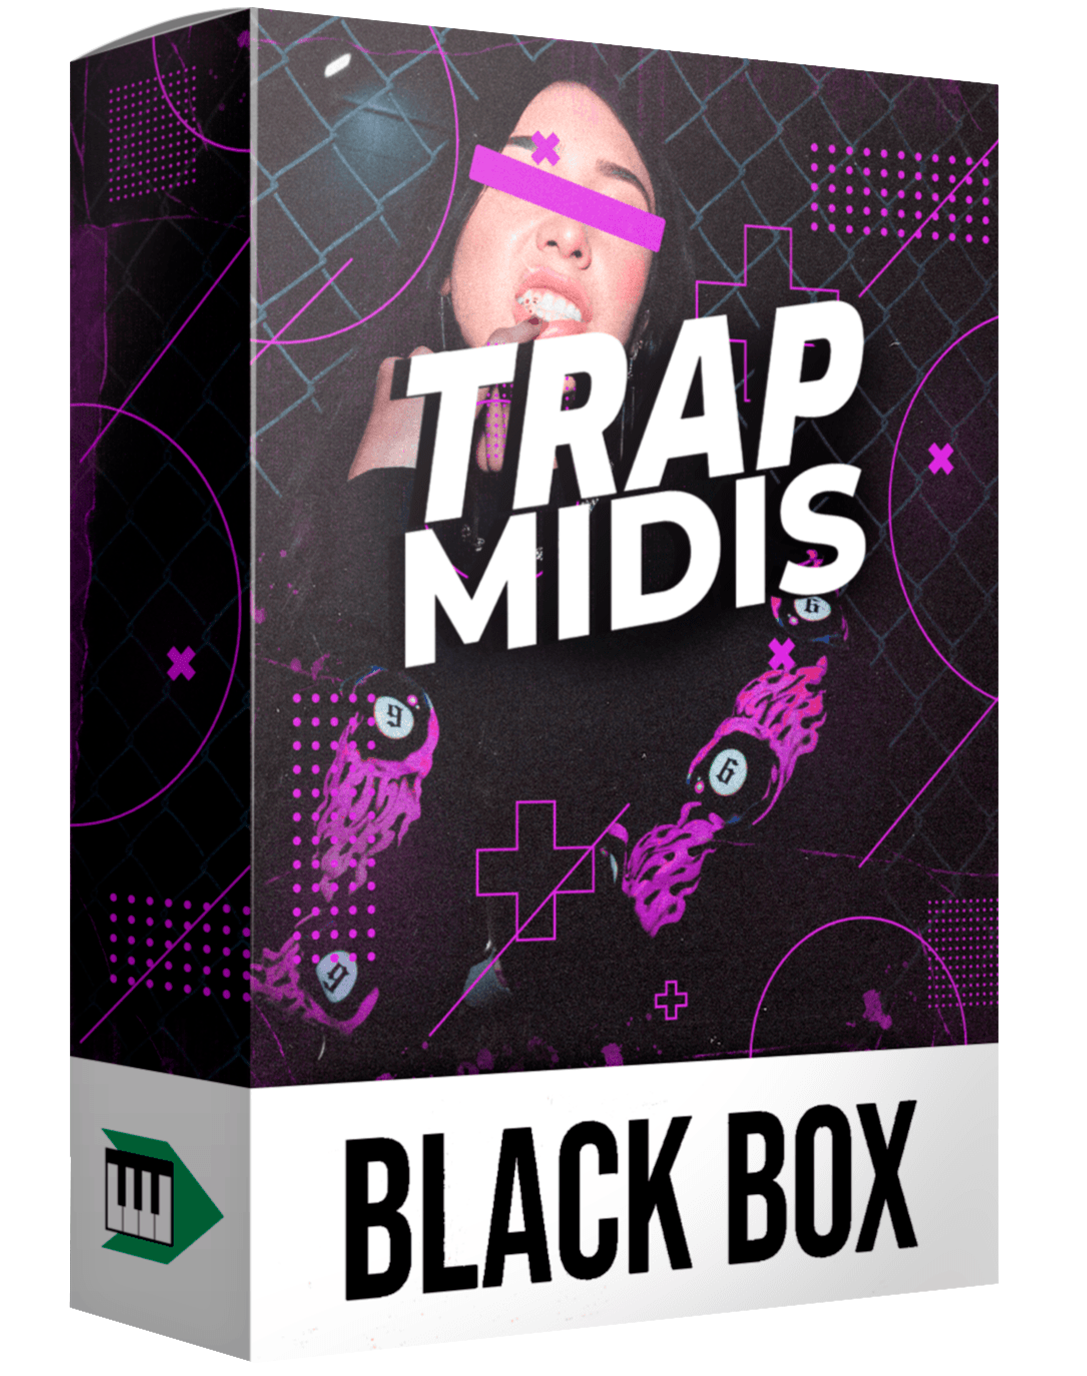 TRAP MIDIS - BLACK BOX